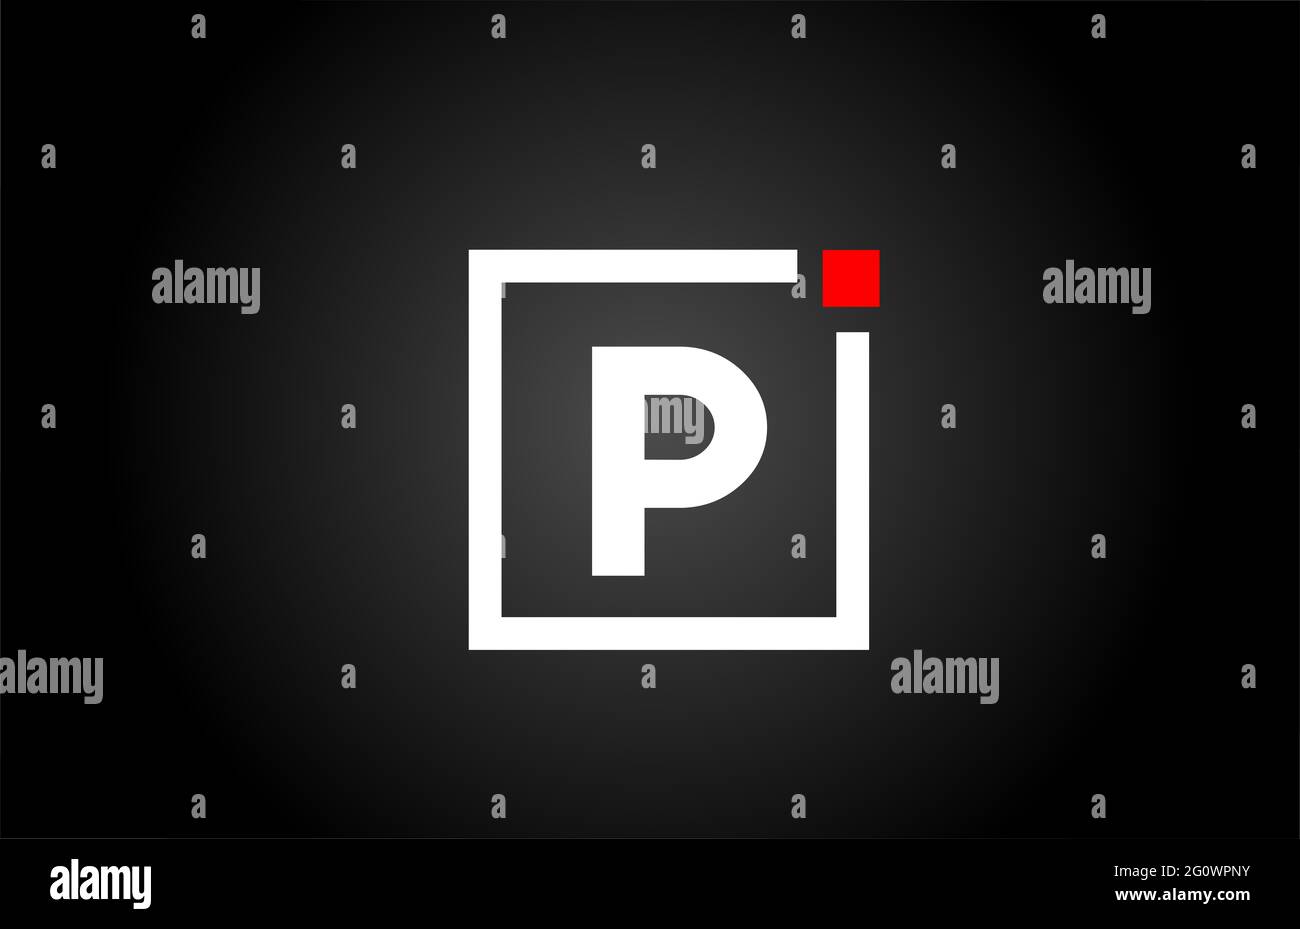 Logo con l'icona della lettera dell'alfabeto P in bianco e nero. Design aziendale e aziendale con punto quadrato e rosso. Modello di identità aziendale creativa Foto Stock